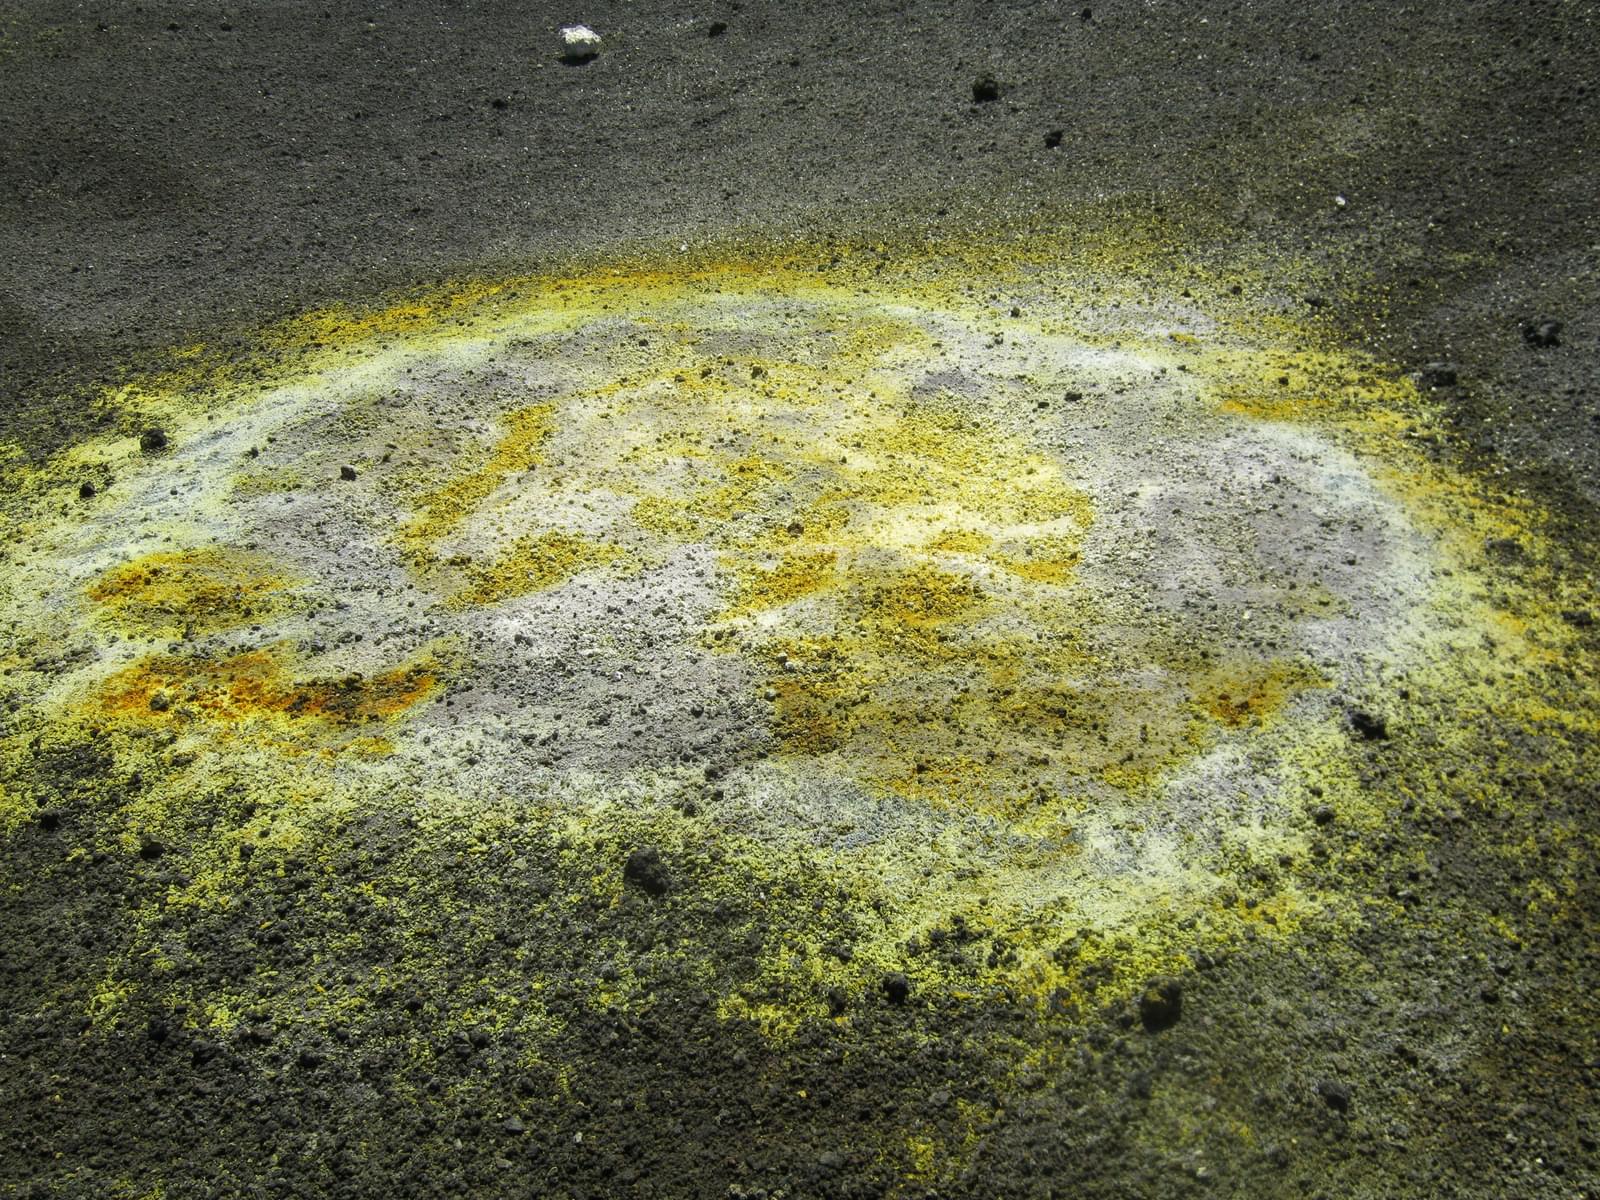 Sulfur Deposits